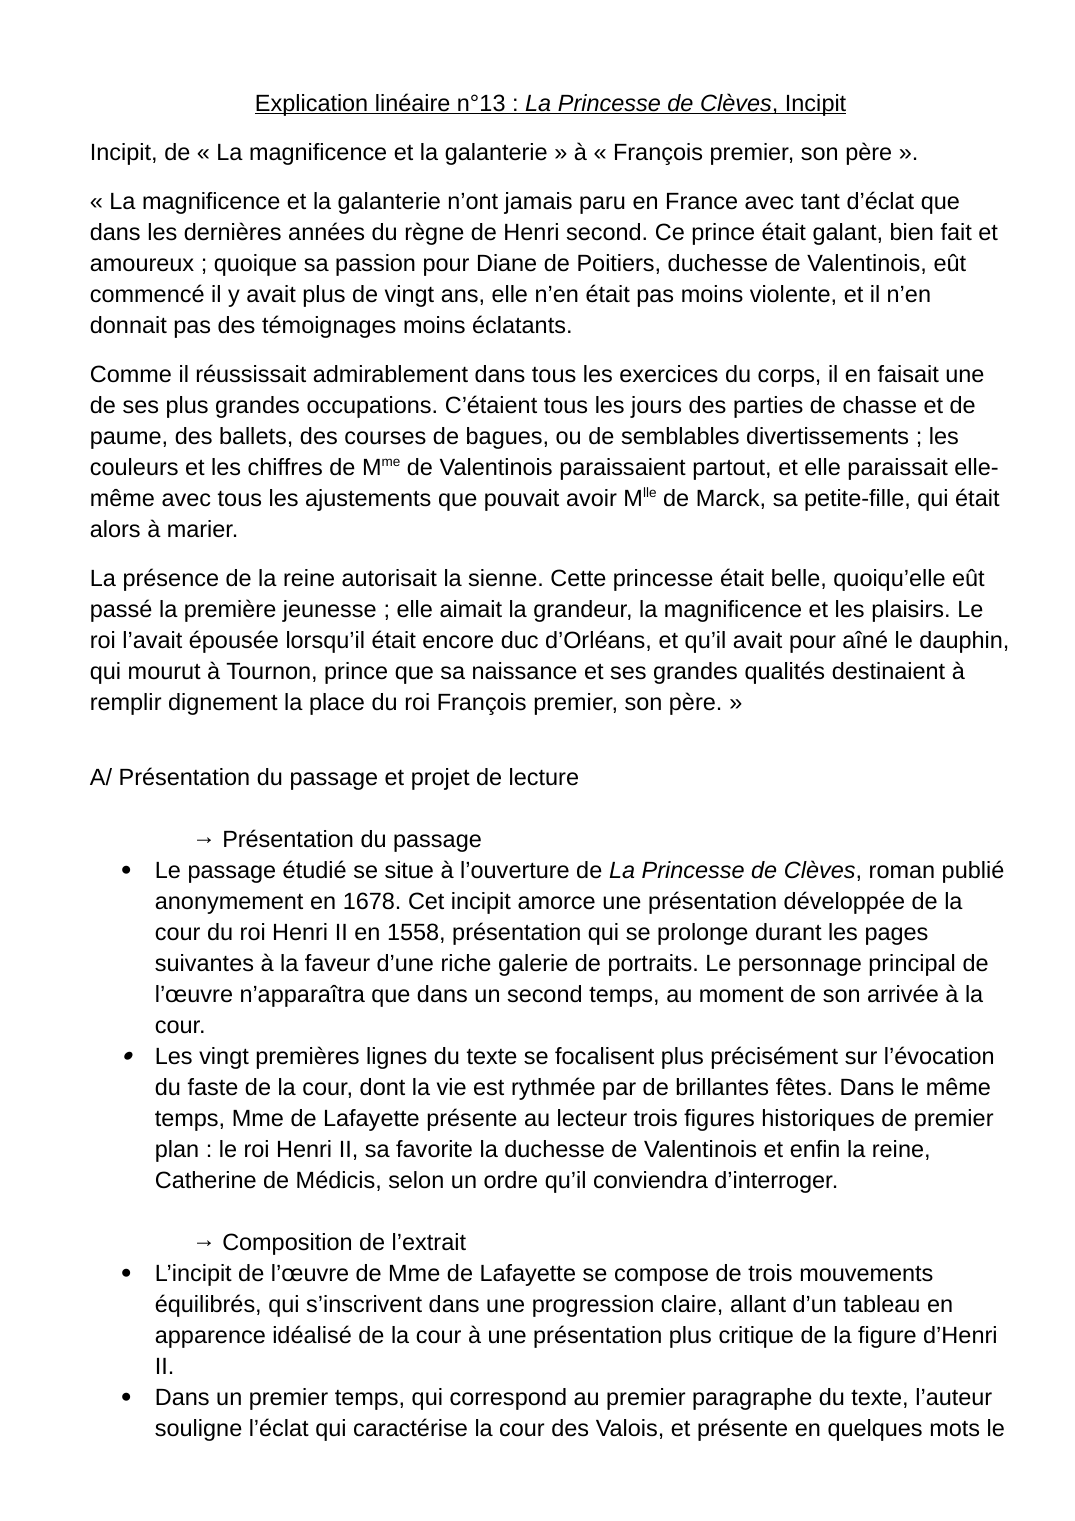 Prévisualisation du document Explication linéaire : "La Princesse de Clèves" Incipit